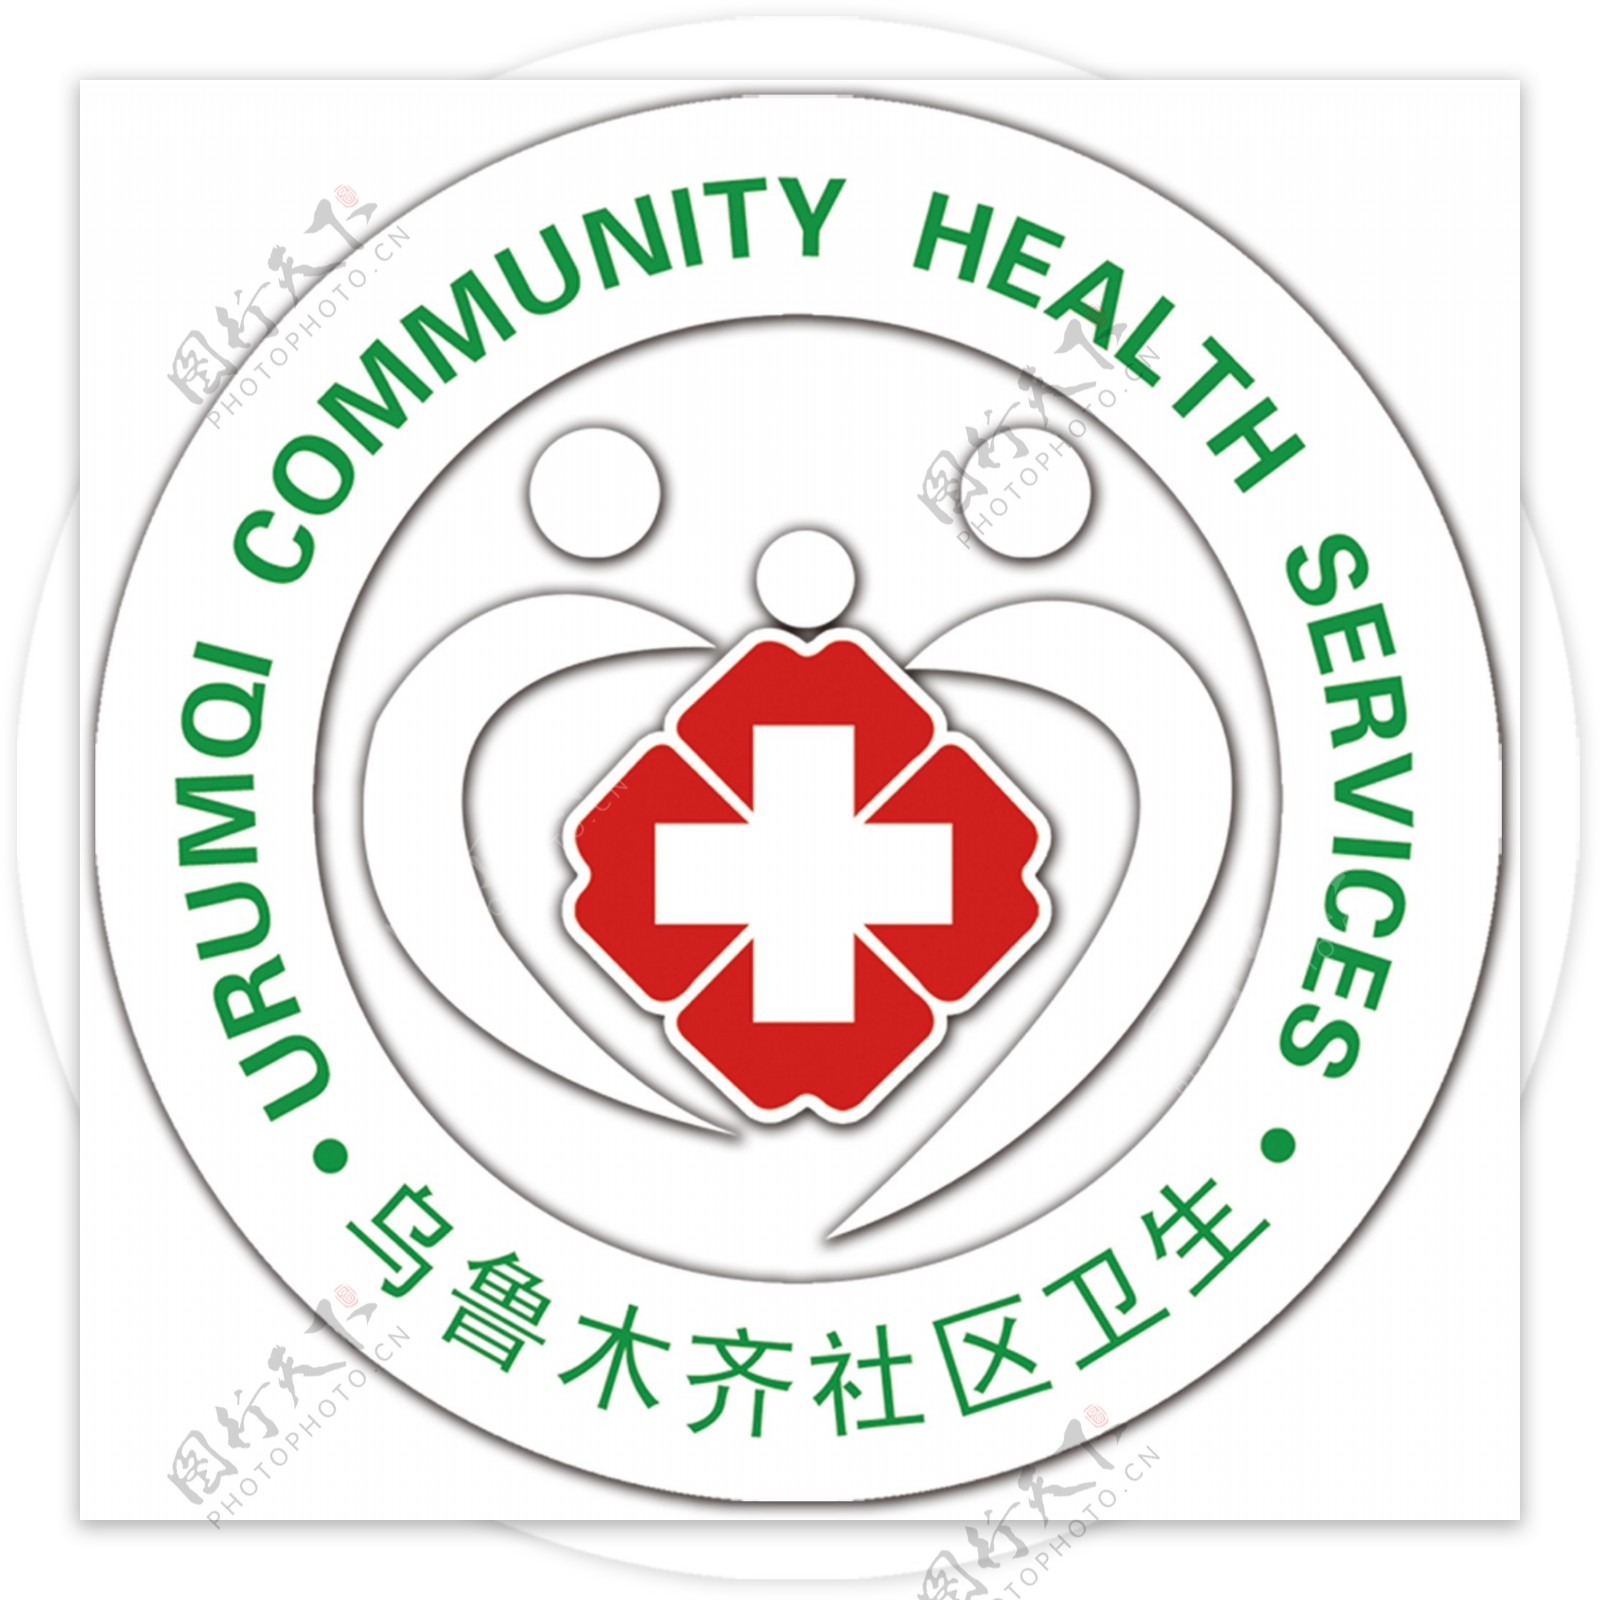 社区卫生标志